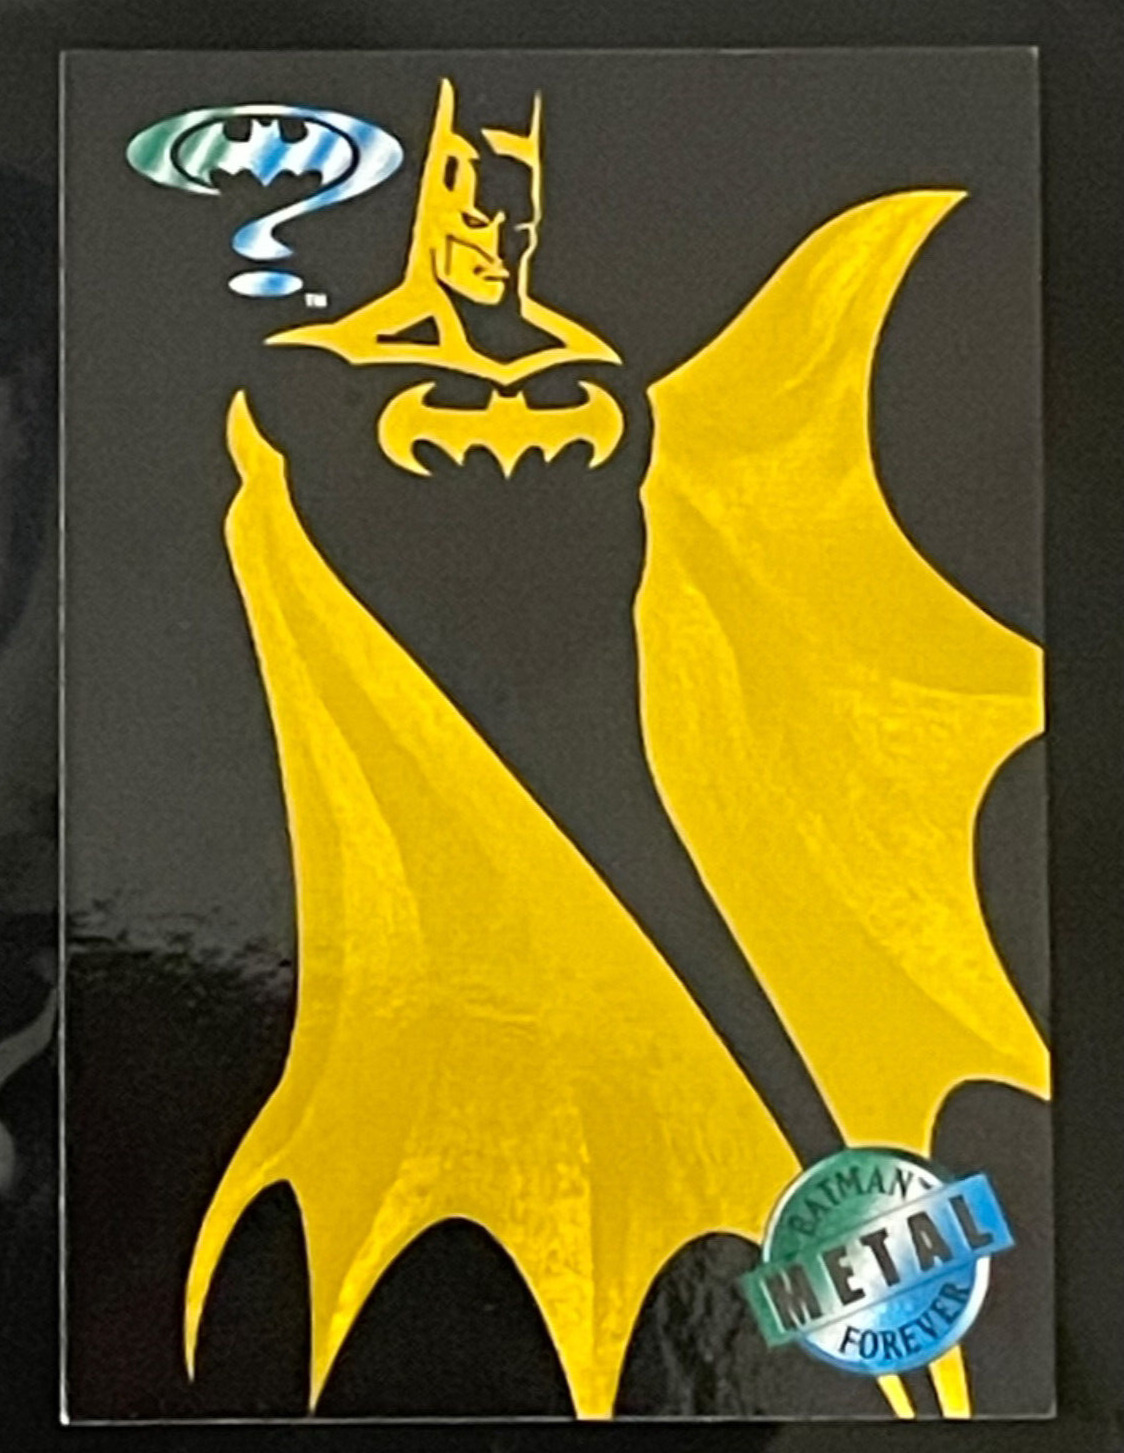 1995 Fleer Metal Batman Forever Gold Blaster Insert Card #1